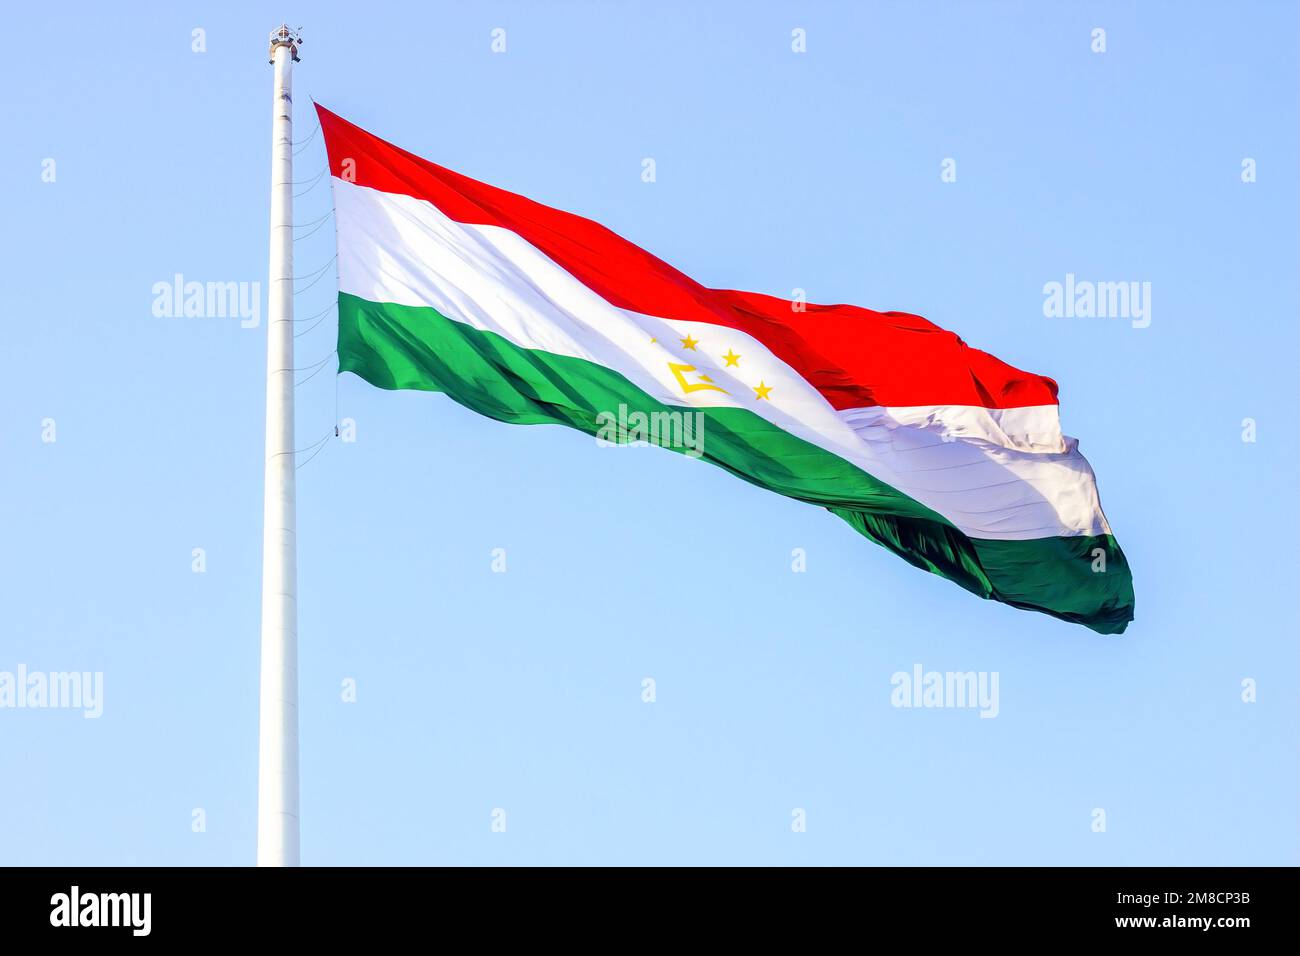 Bandiera nazionale rossa, bianca e verde del Tagikistan sul paletto contro il cielo blu. Foto Stock